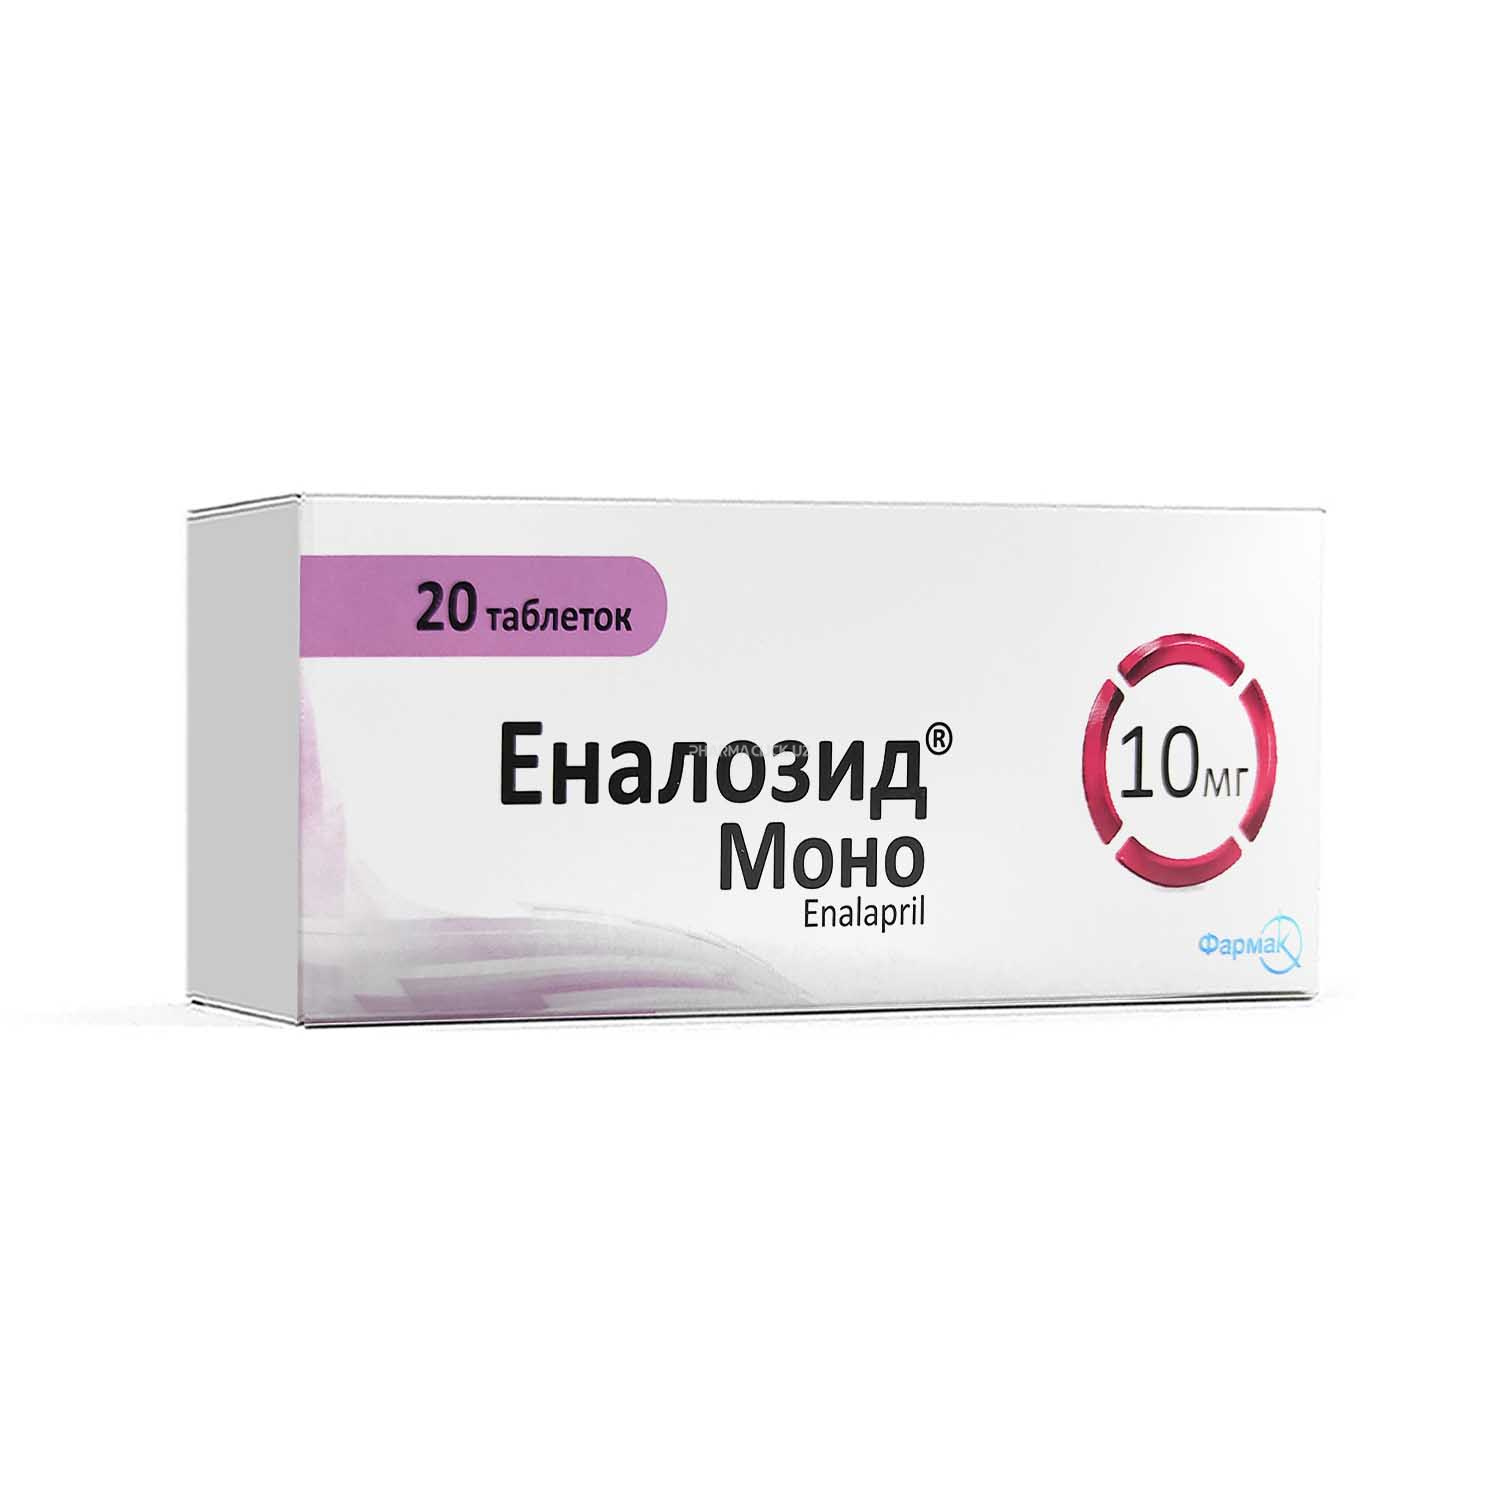 Enalozid Mono tab. 10mg №20